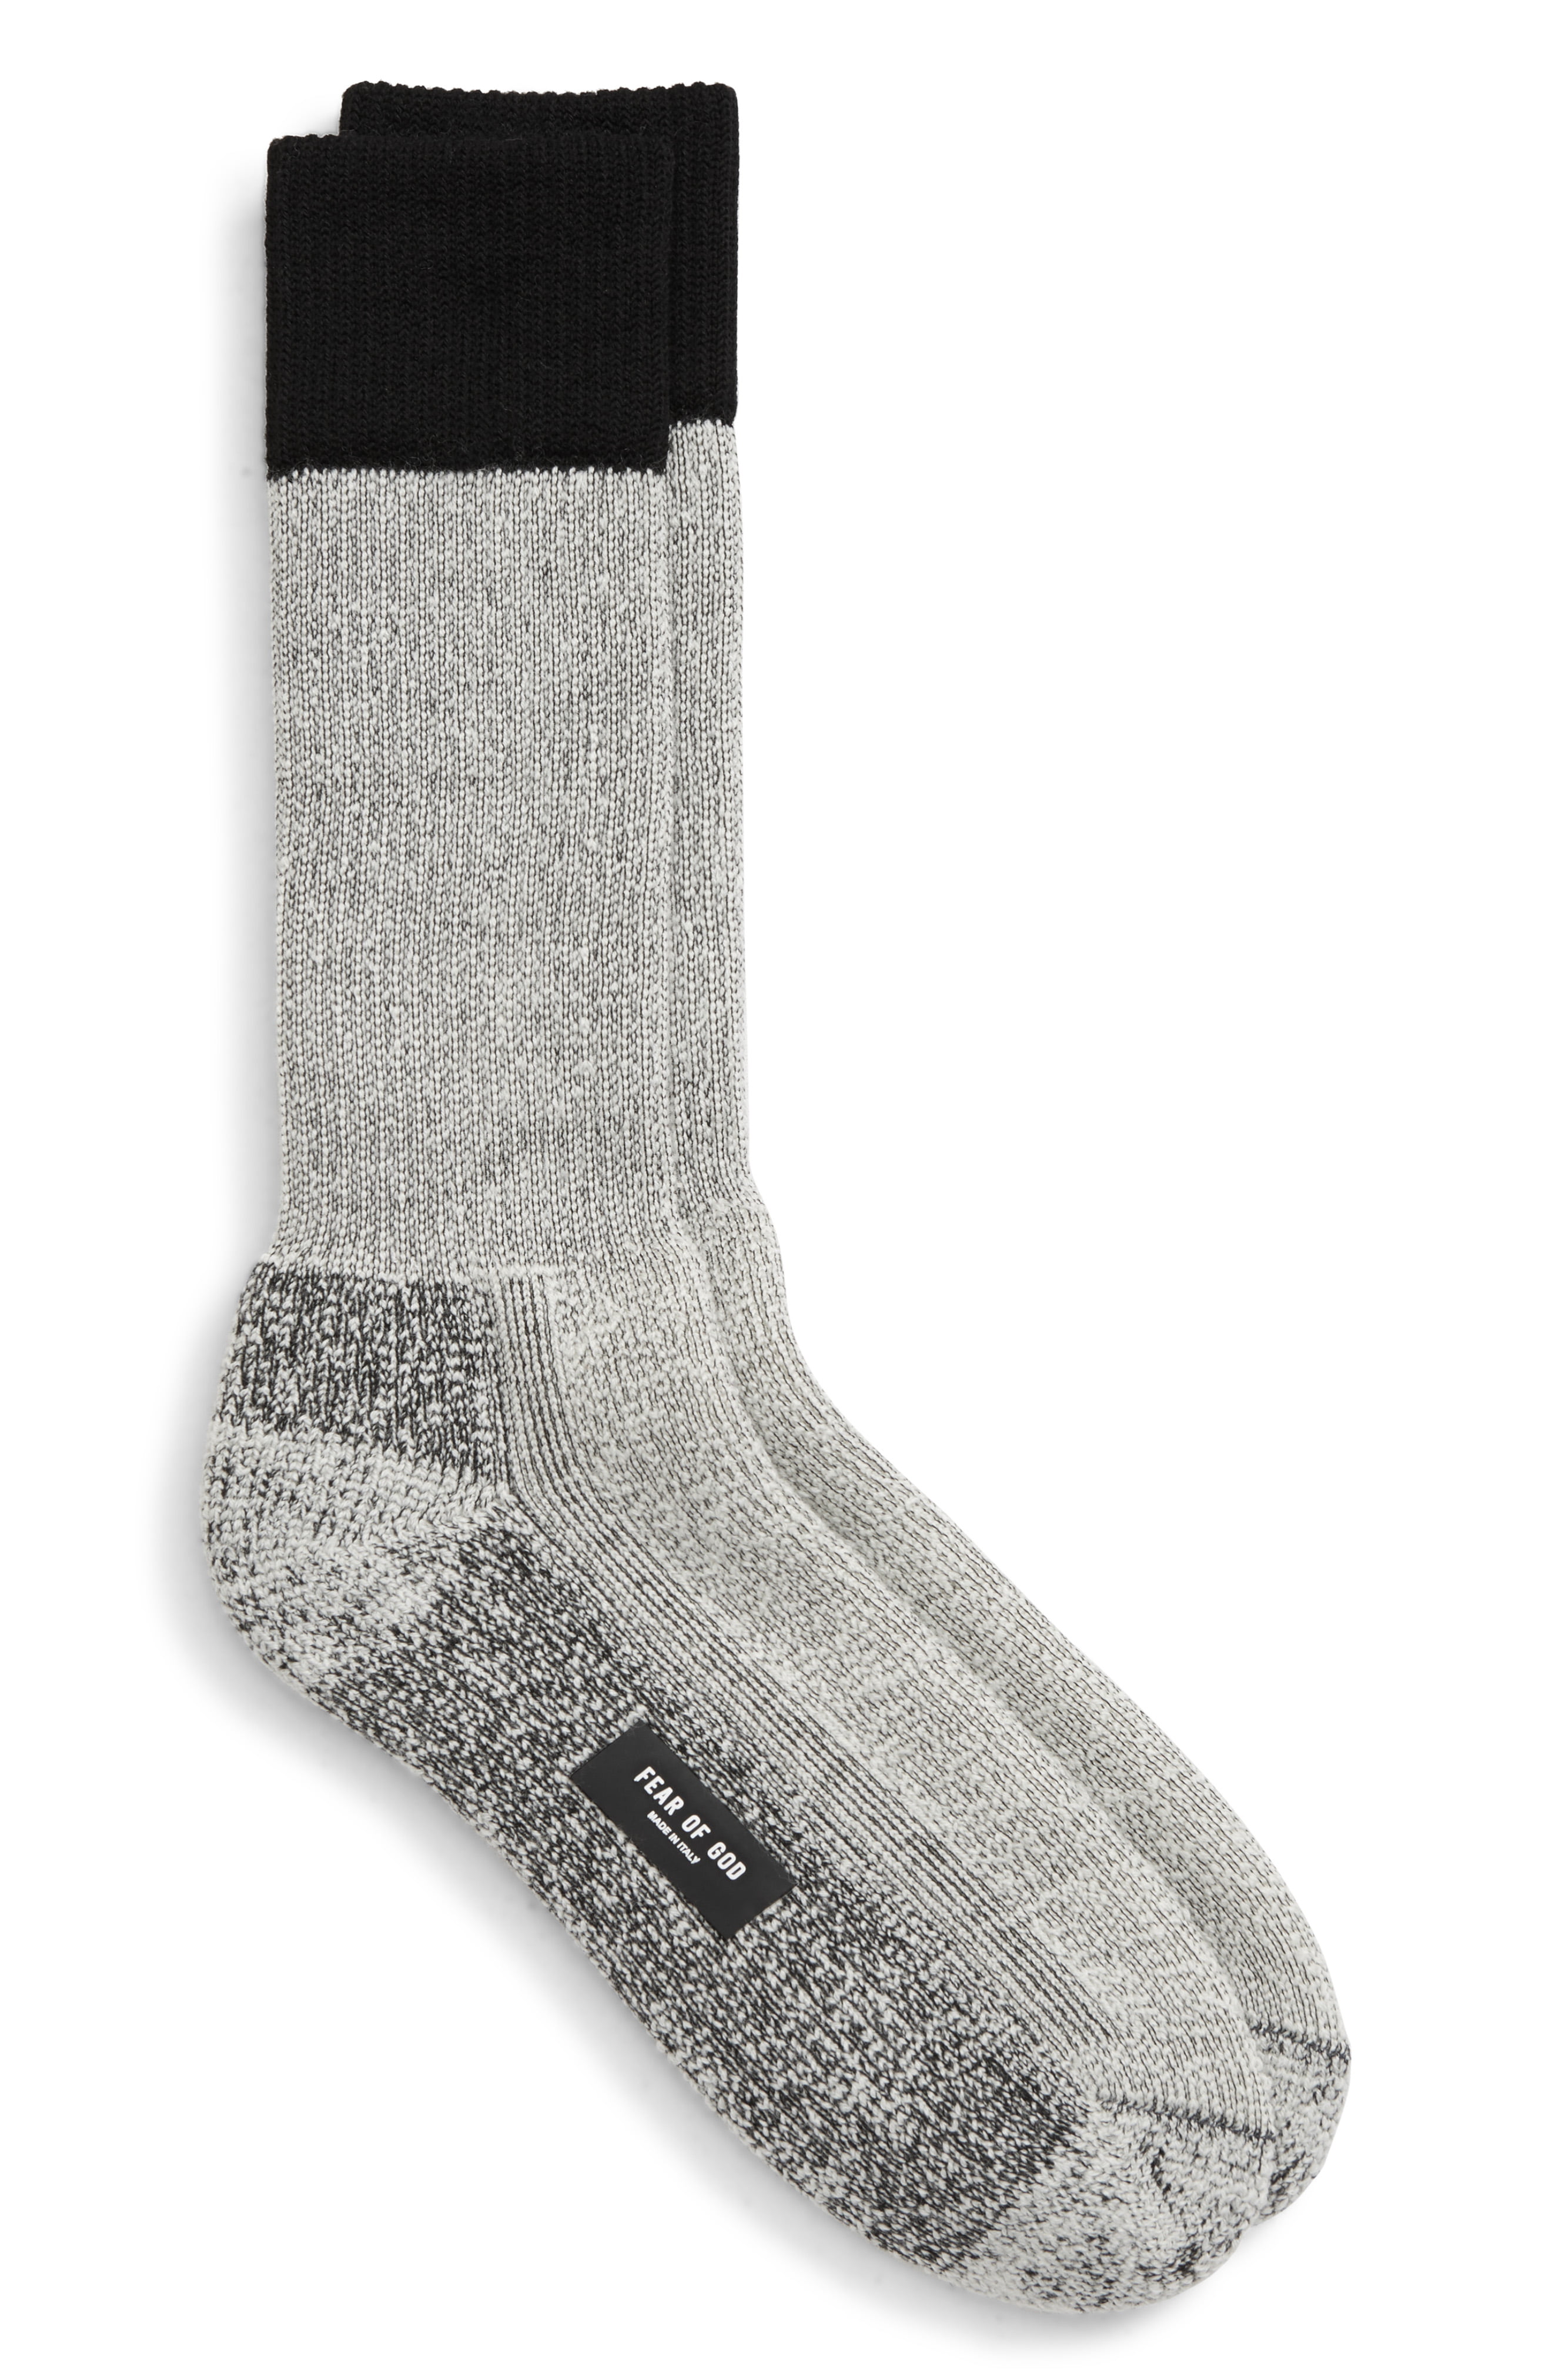 Men’s Fear Of God Merino Wool Blend Crew Socks, Size One Size – Black ...